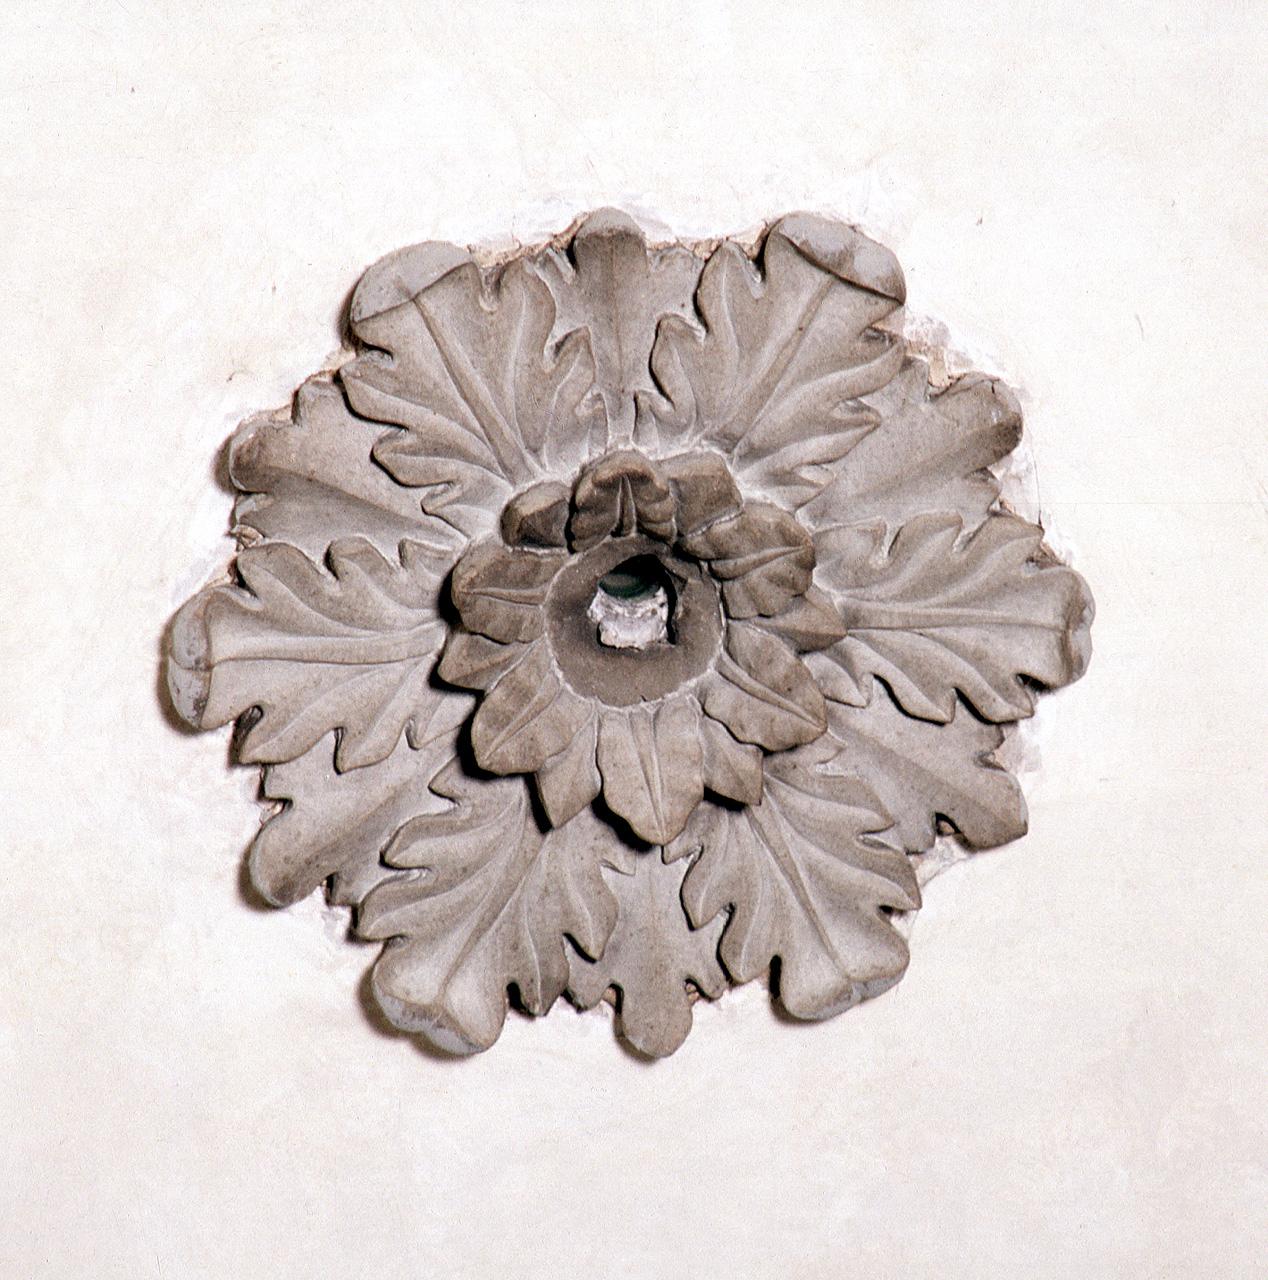 motivo decorativo floreale (chiave di volta) - produzione fiorentina (sec. XV)